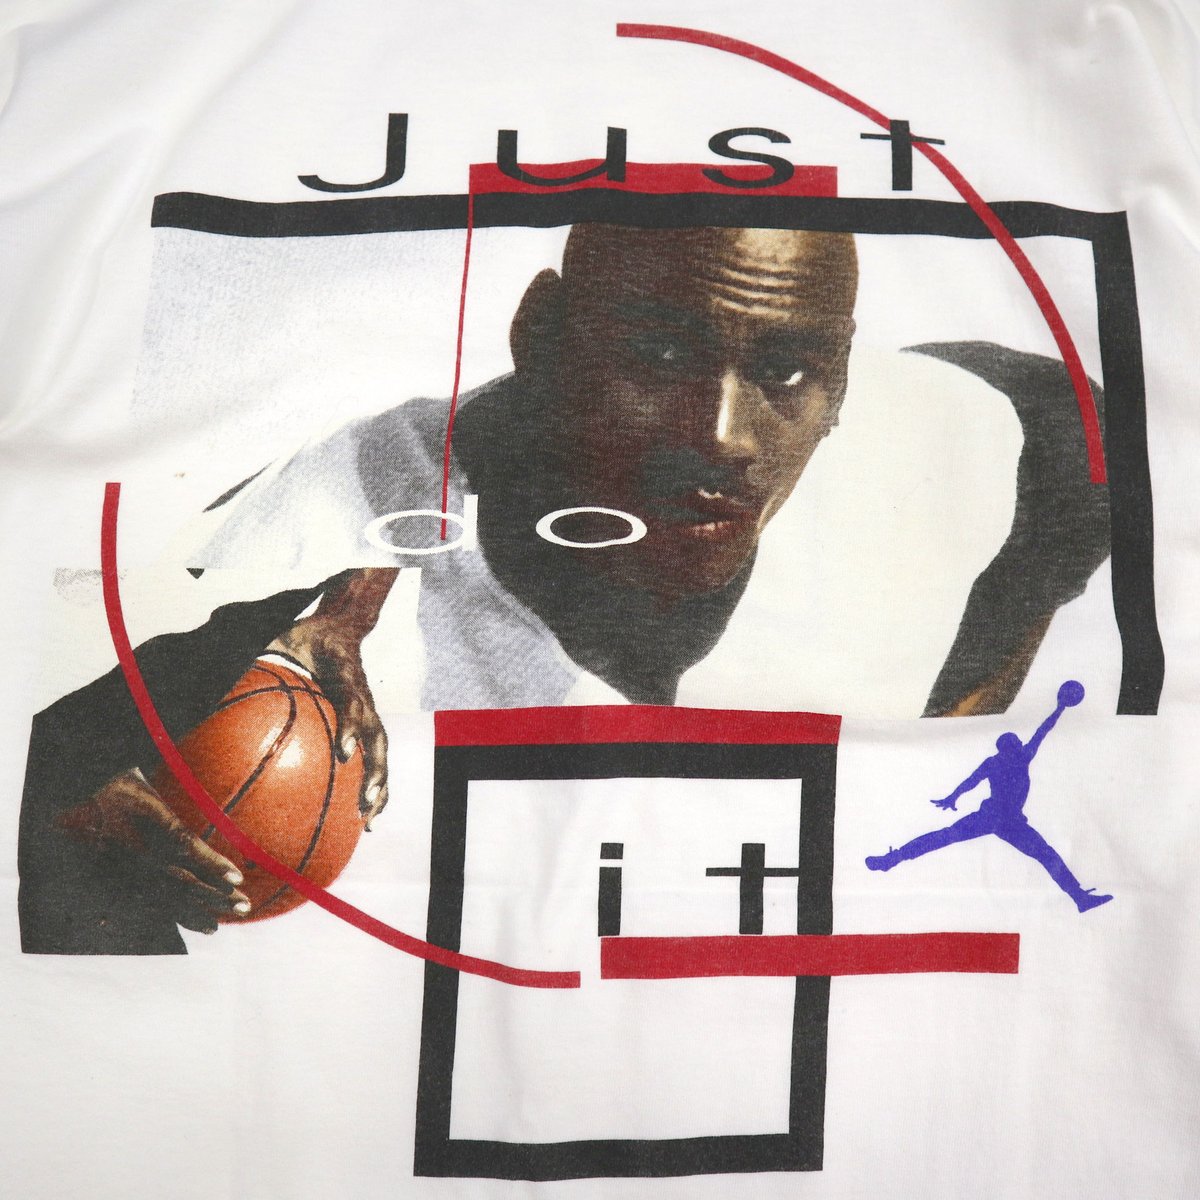 Starter Michael Jordan tシャツ　1990年